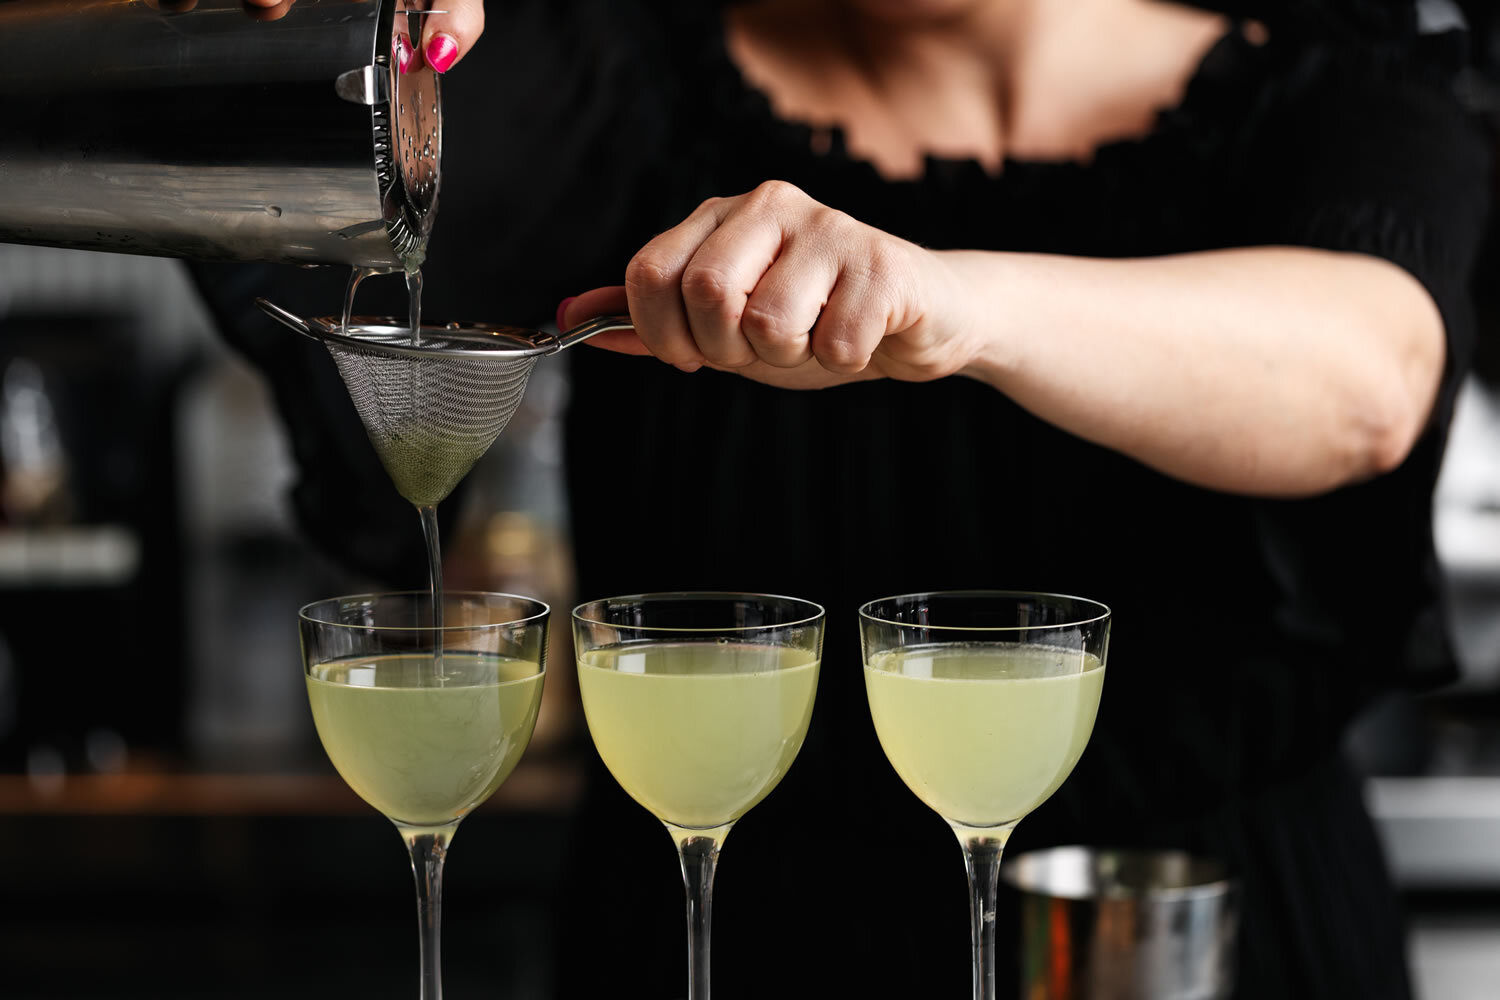 Bartender preparing cocktails